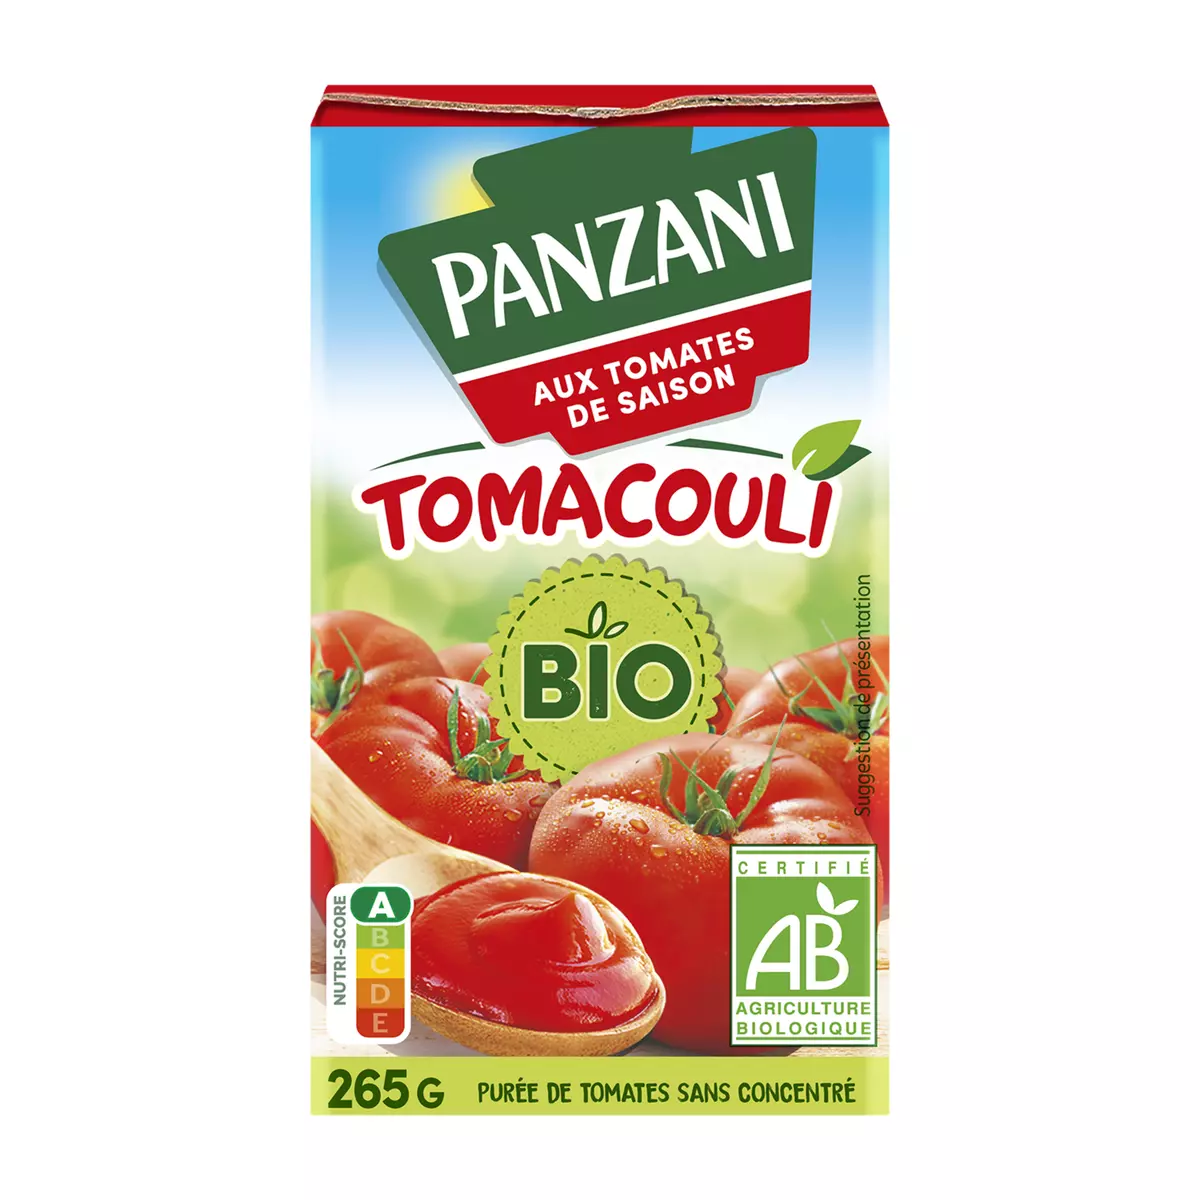 PANZANI Purée de tomates bio sans concentré Tomacouli 265g